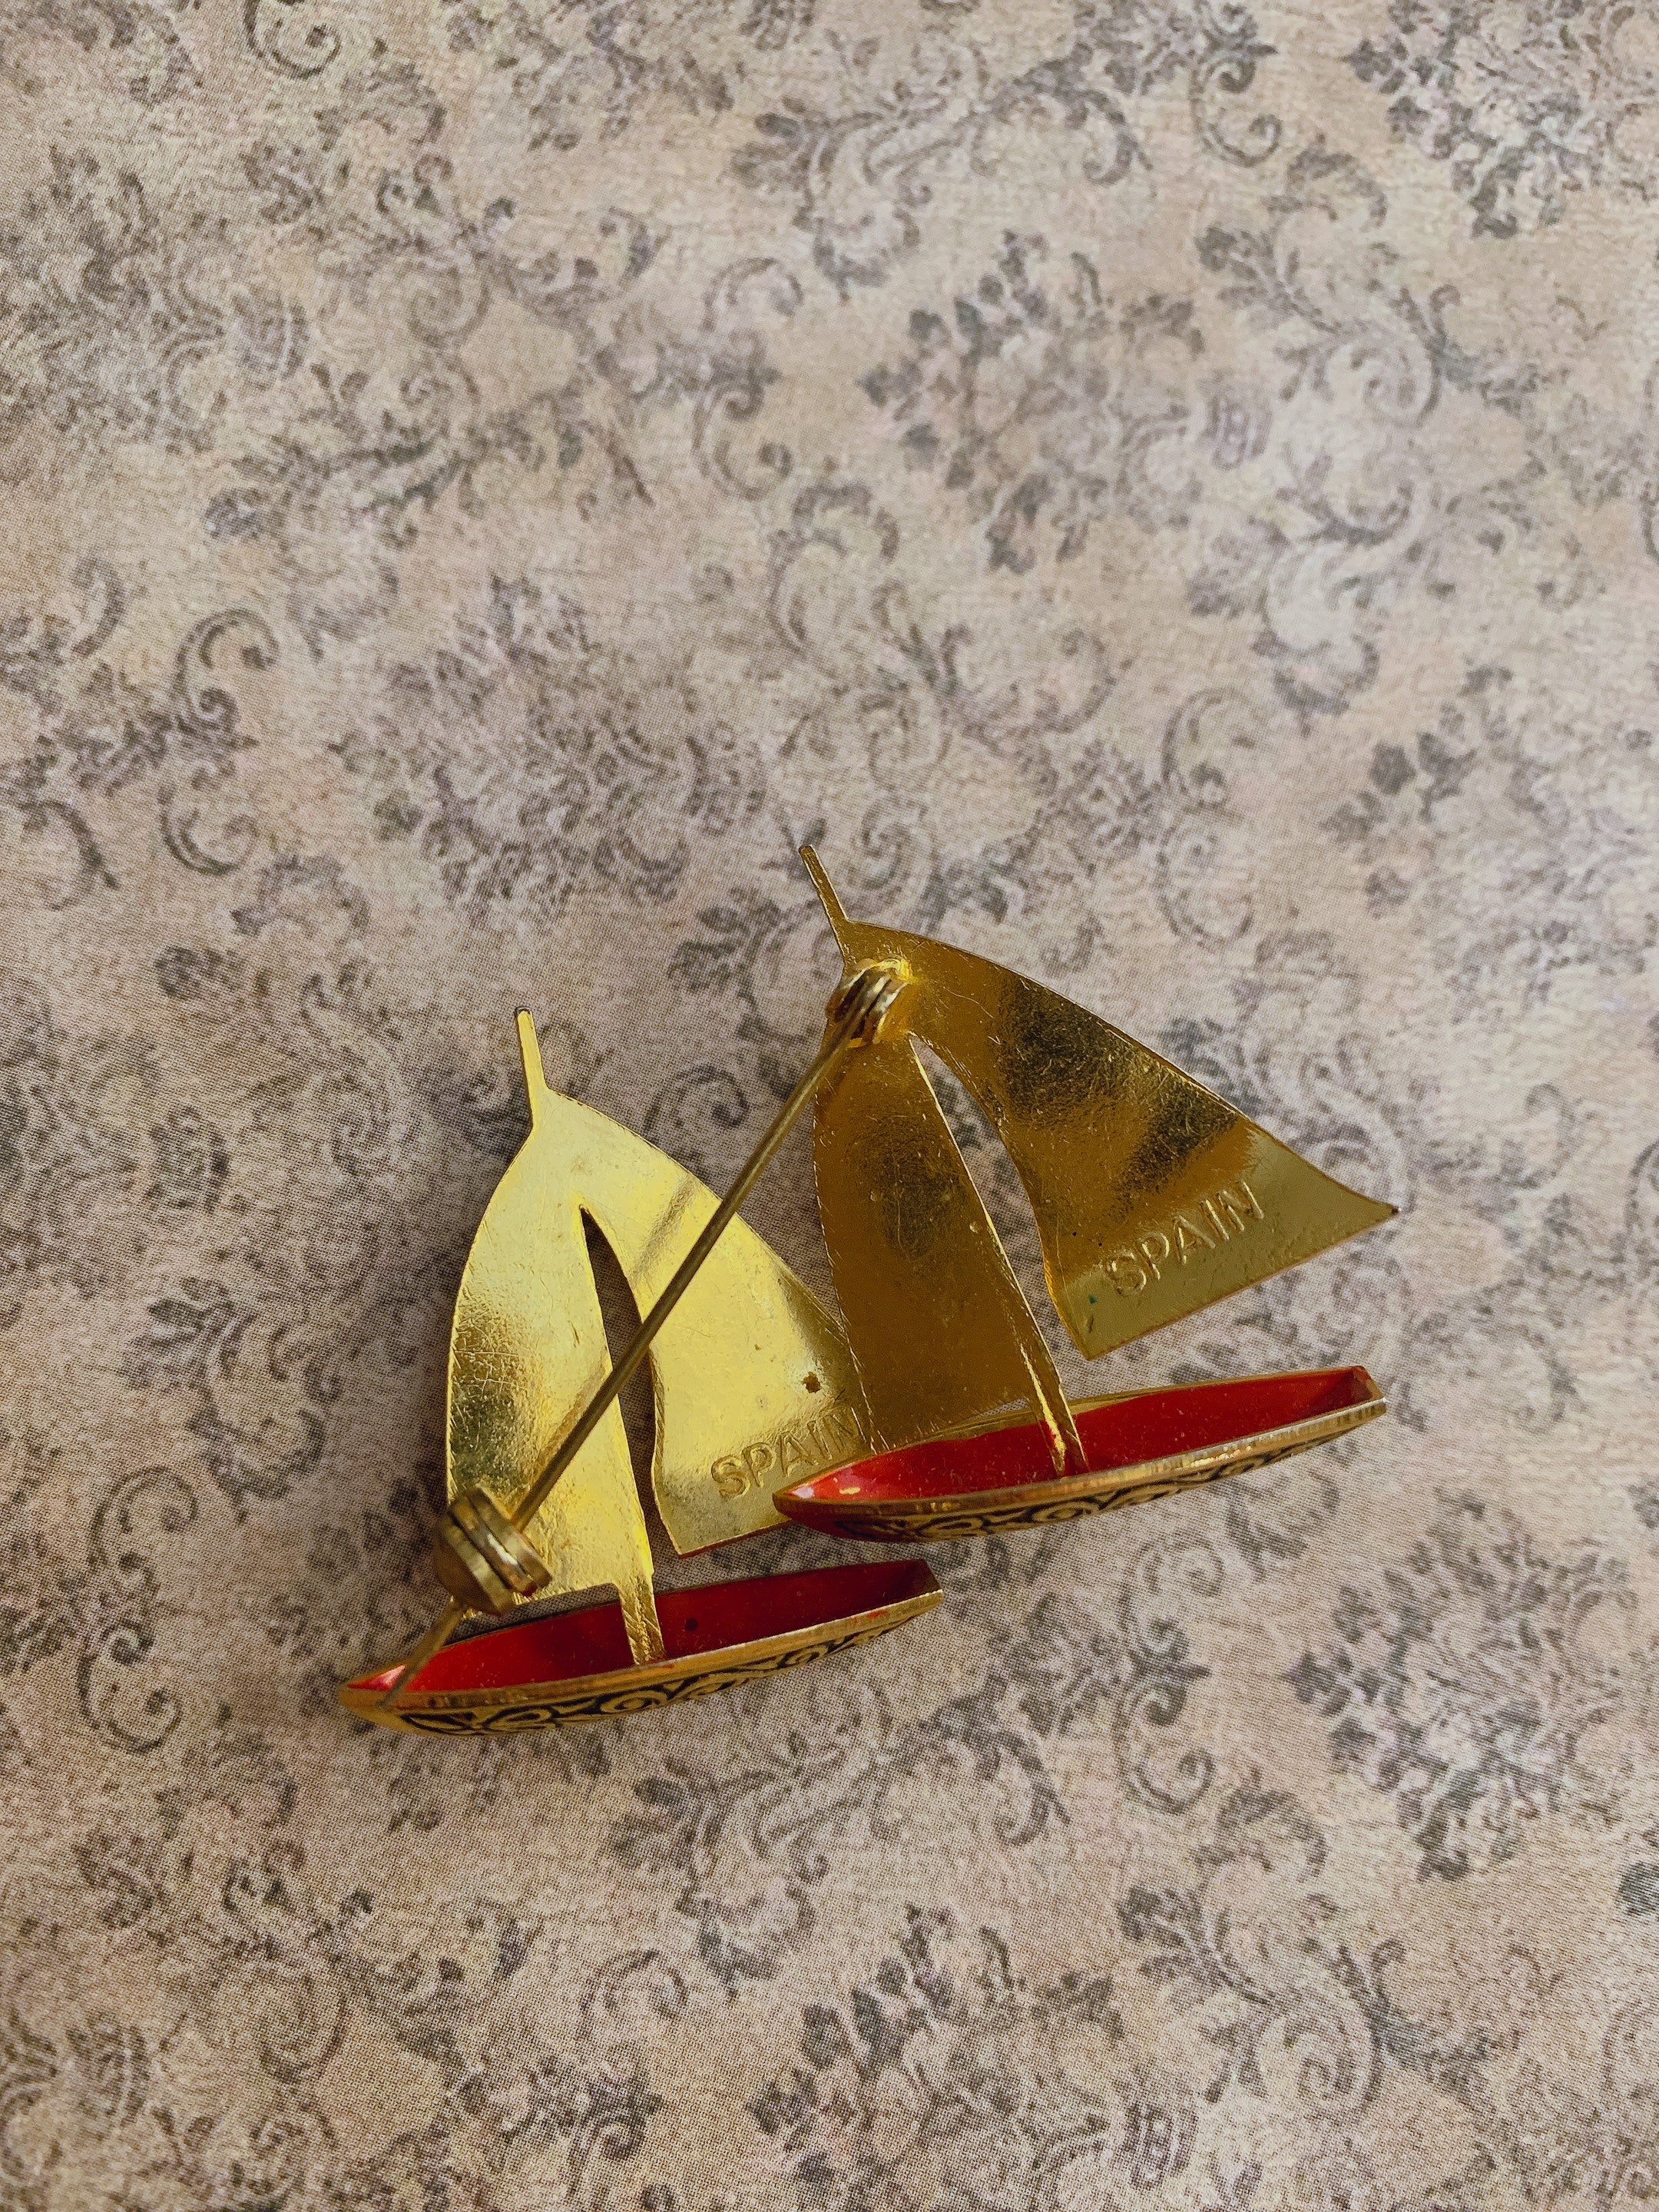 Nautical Ship/Boat Vintage Brooch/Pin